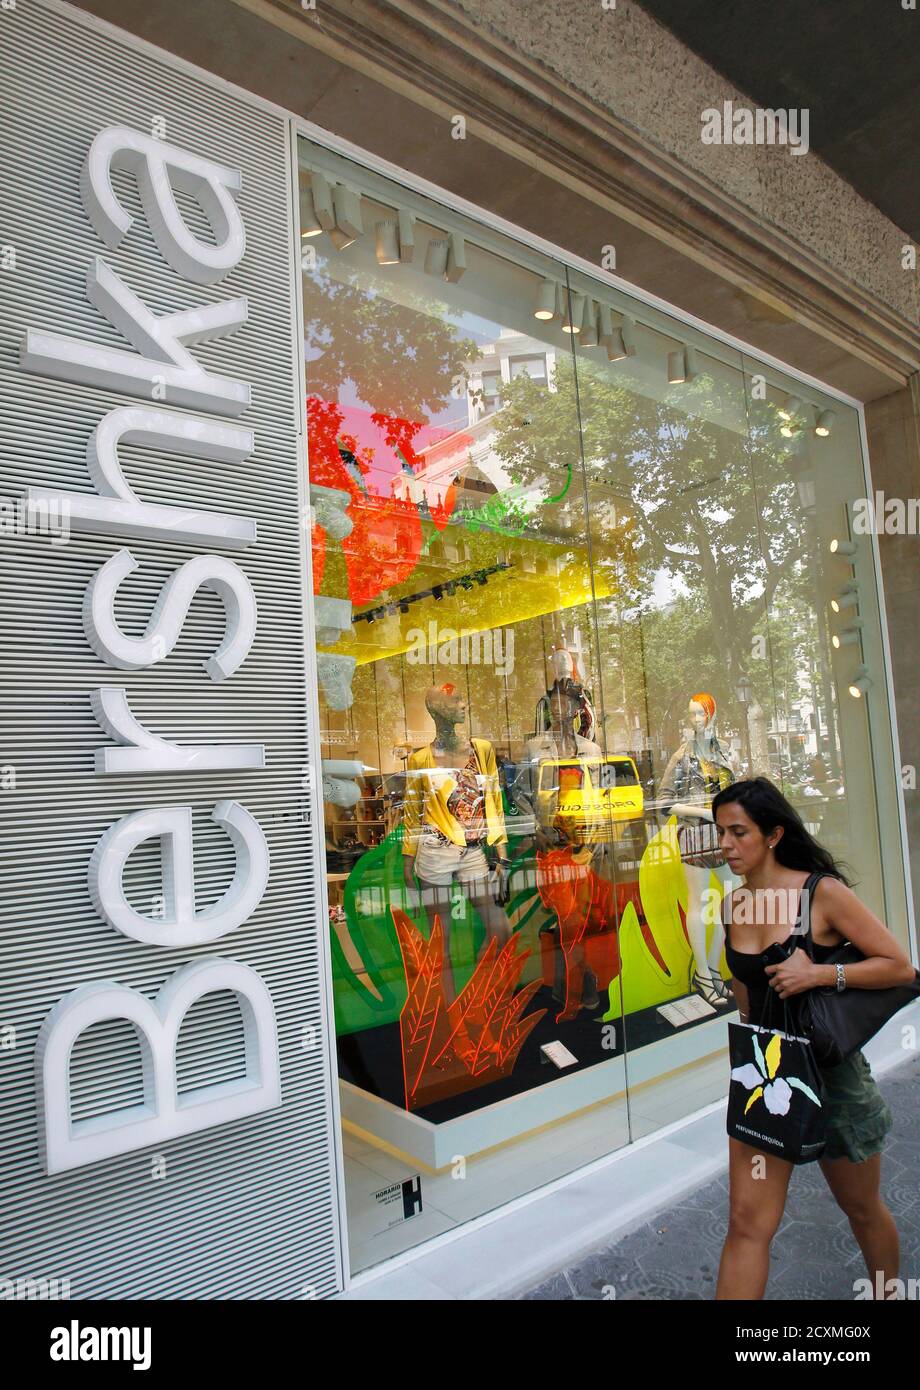 Una mujer pasa por un escaparate de una tienda Bershka, parte de Inditex,  en Barcelona el 13 de junio de 2012. La española Inditex SA, el mayor  minorista de ropa del mundo,